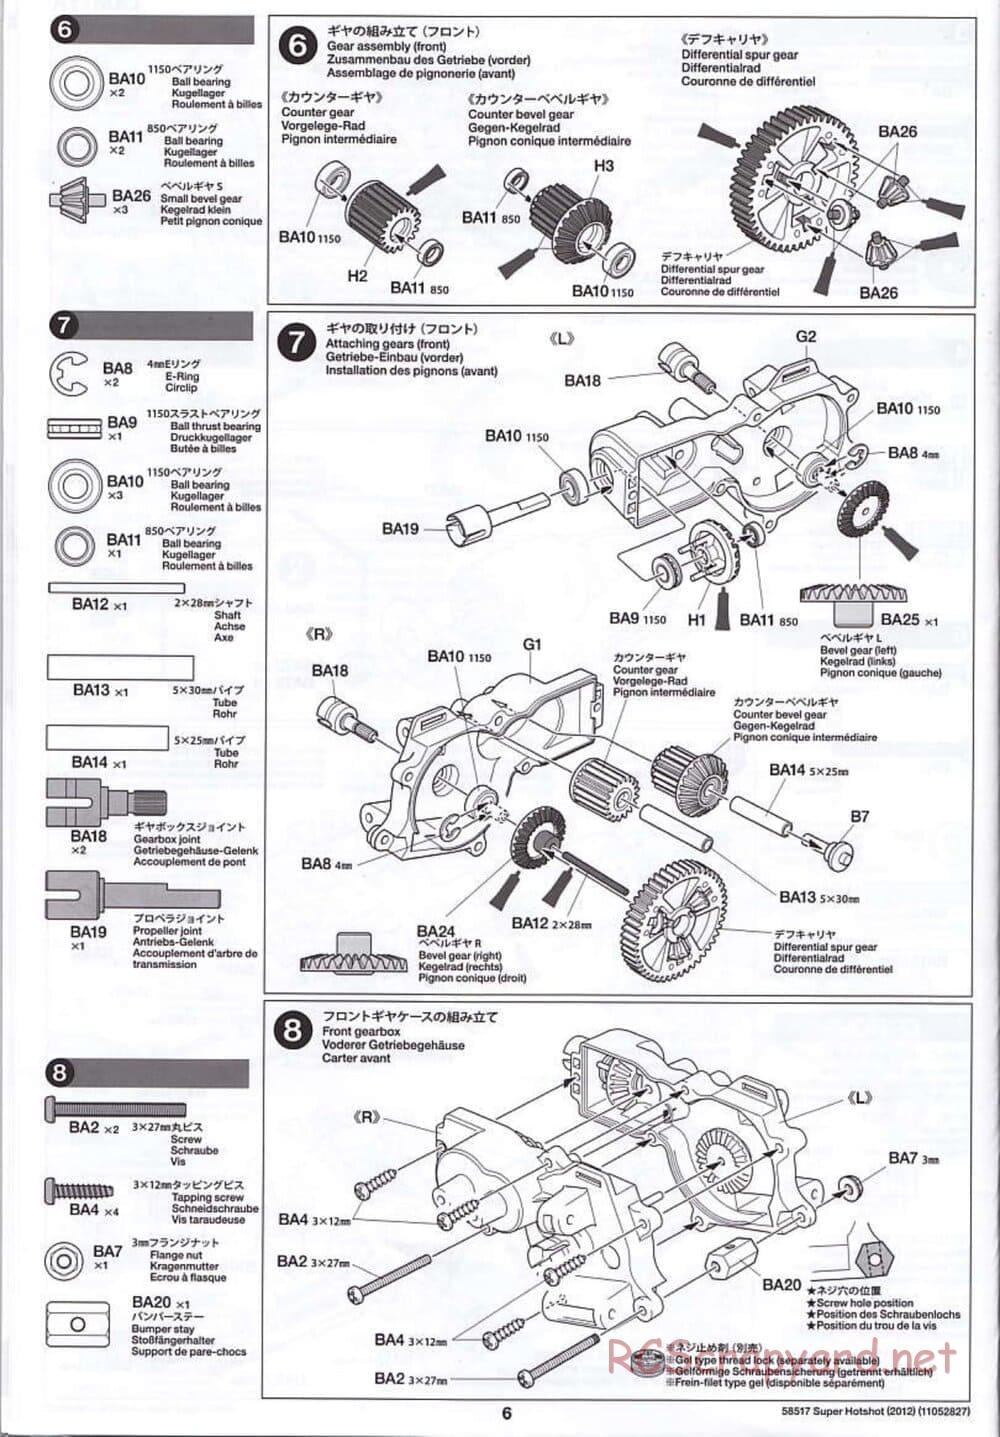 Tamiya - Super Hotshot 2012 - HS Chassis - Manual - Page 6